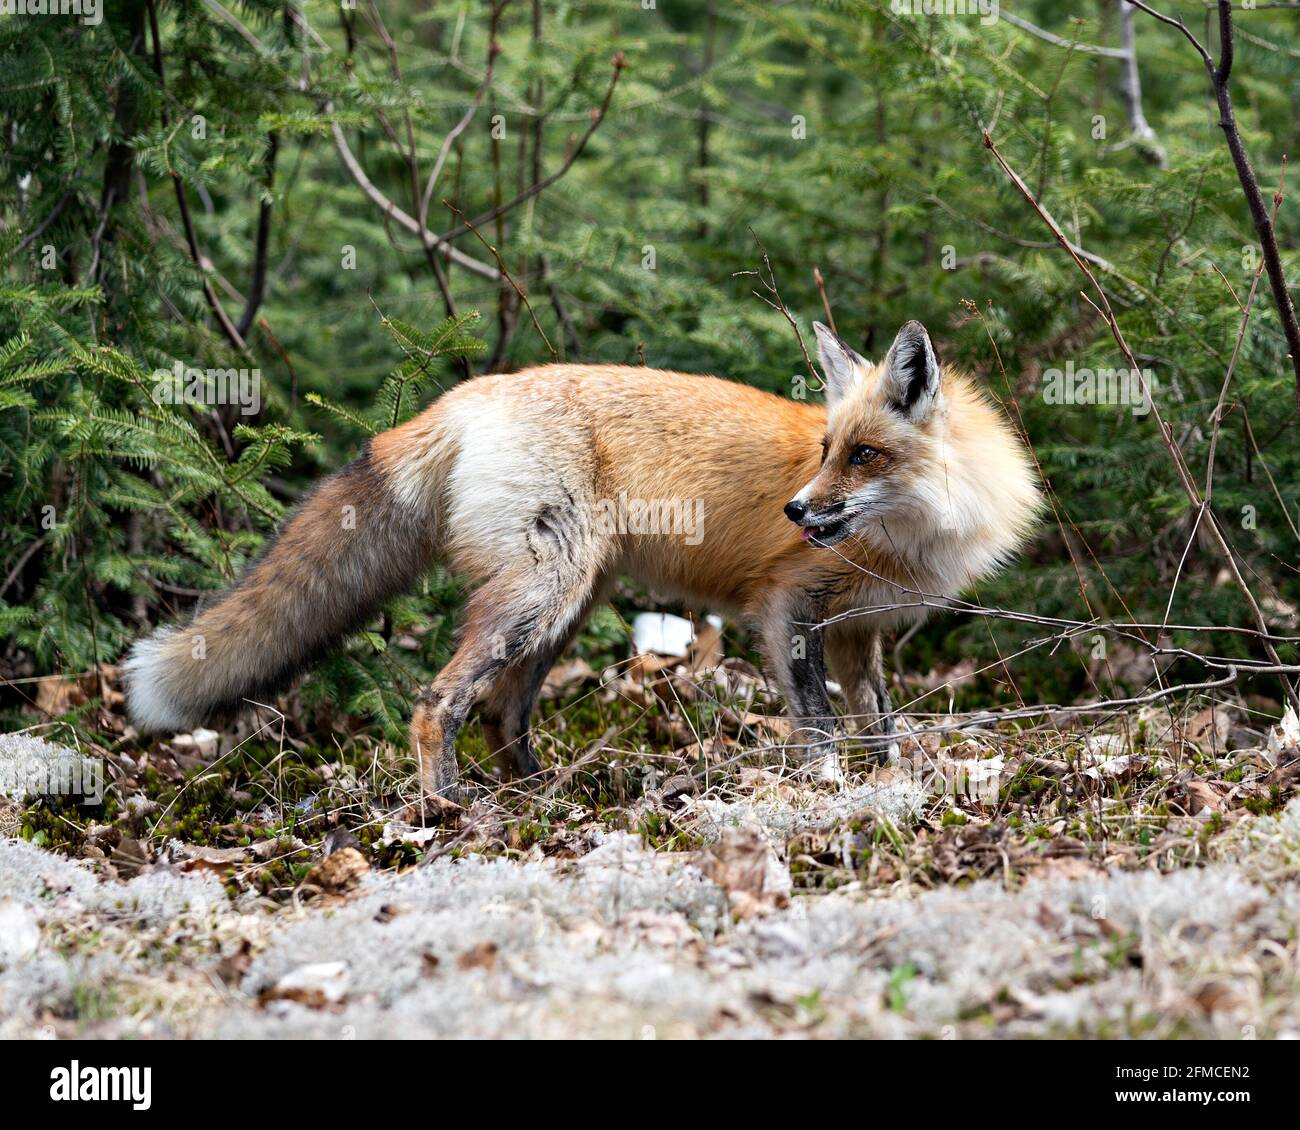 Red Fox primo piano profilo vista laterale con uno sfondo di rami di pino nel suo ambiente e habitat. Immagine FOX. Immagine. Verticale. Foto Stock